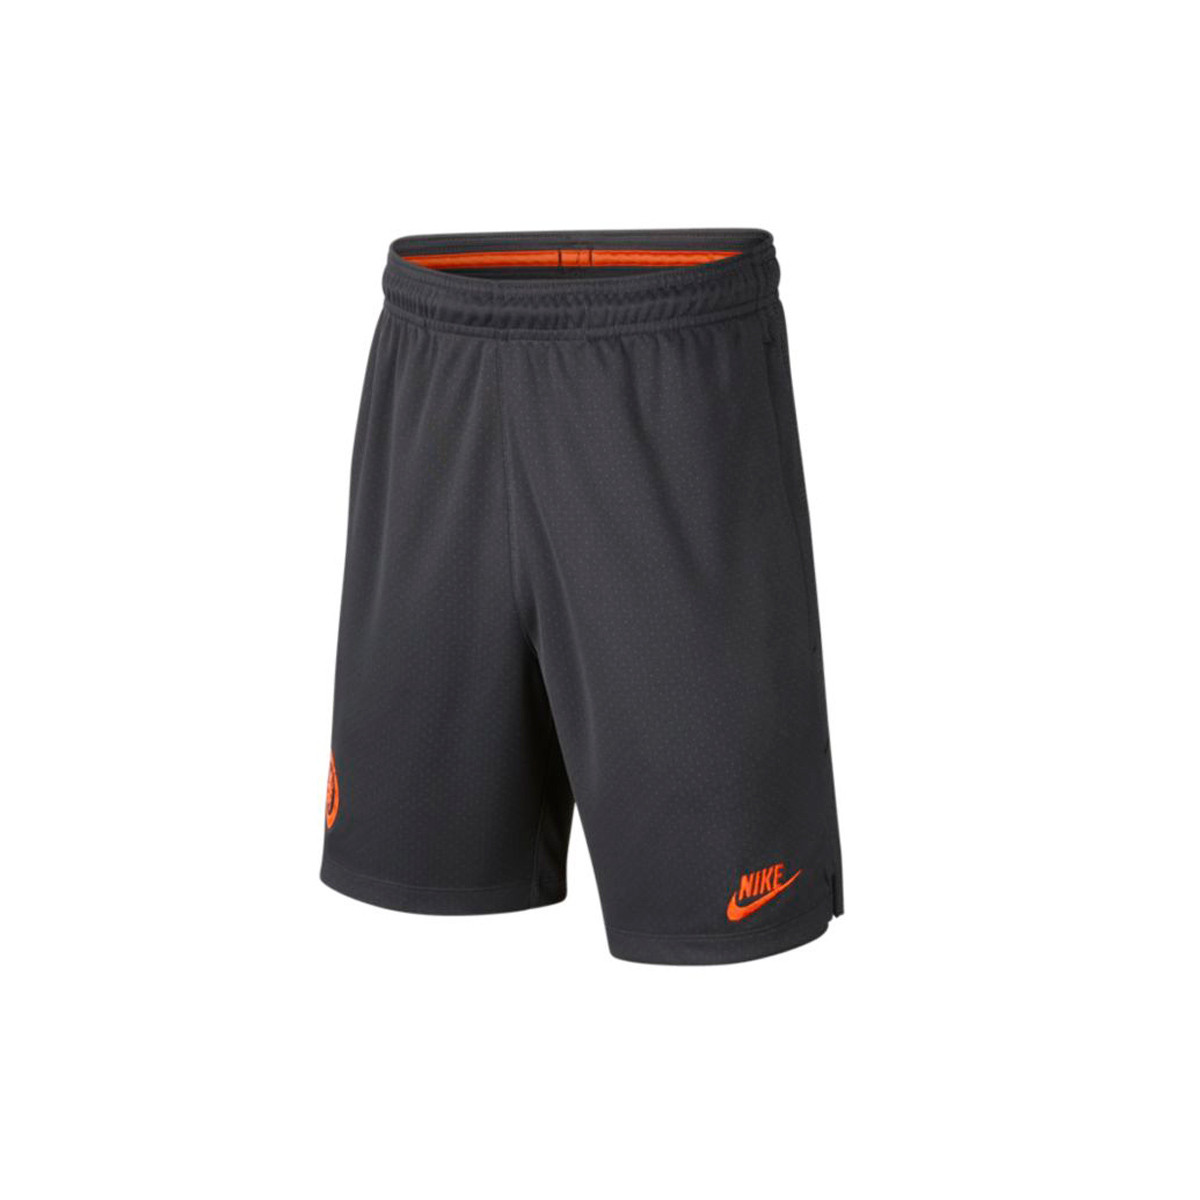 nike shorts black and orange